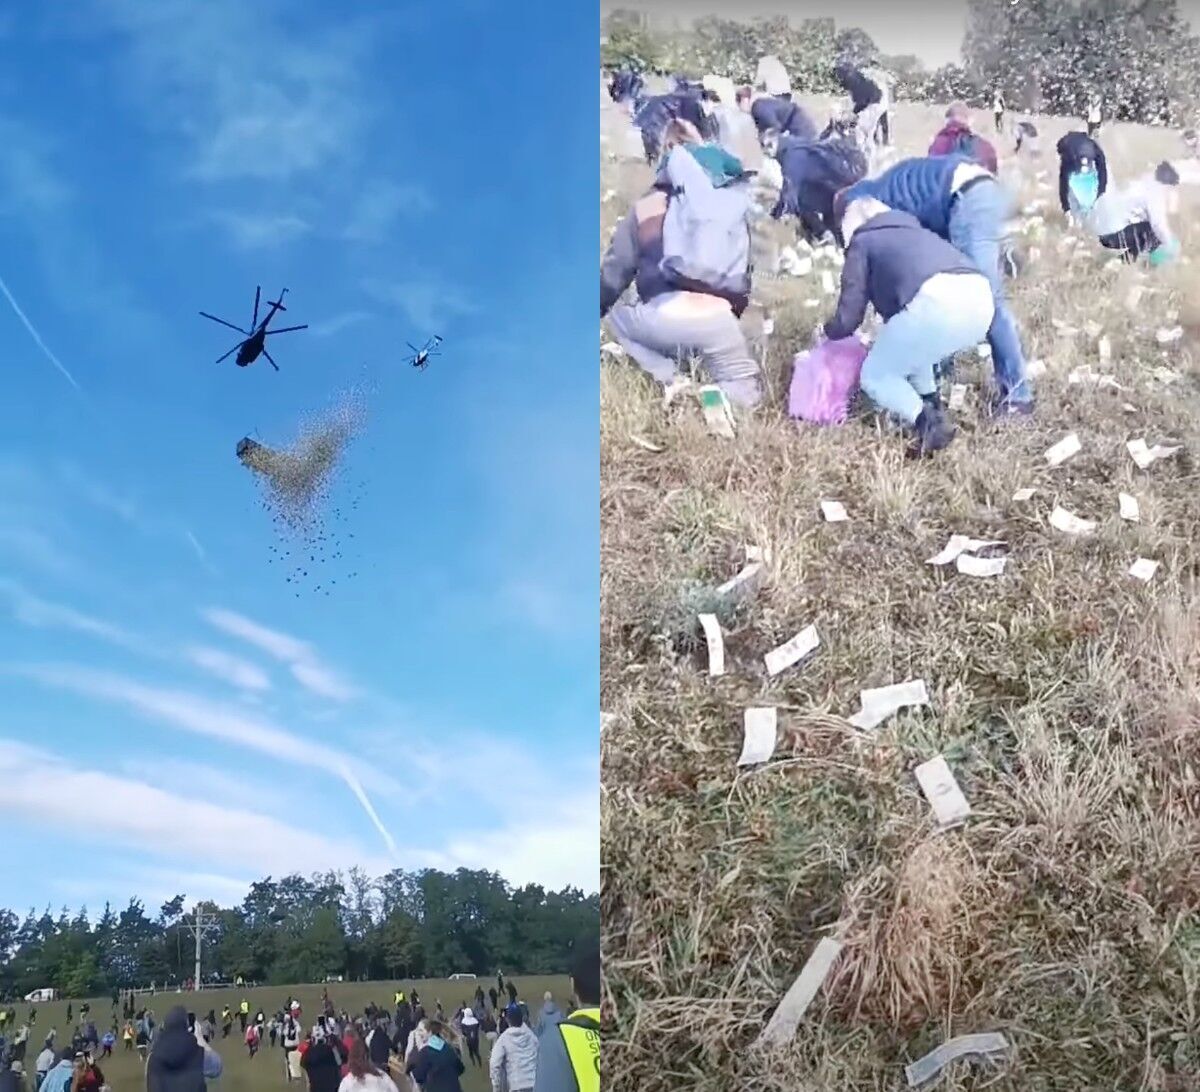 У Чехії з гелікоптера скинули мільйон доларів: тисячі людей збирали гроші в поліетиленові пакети. Відео